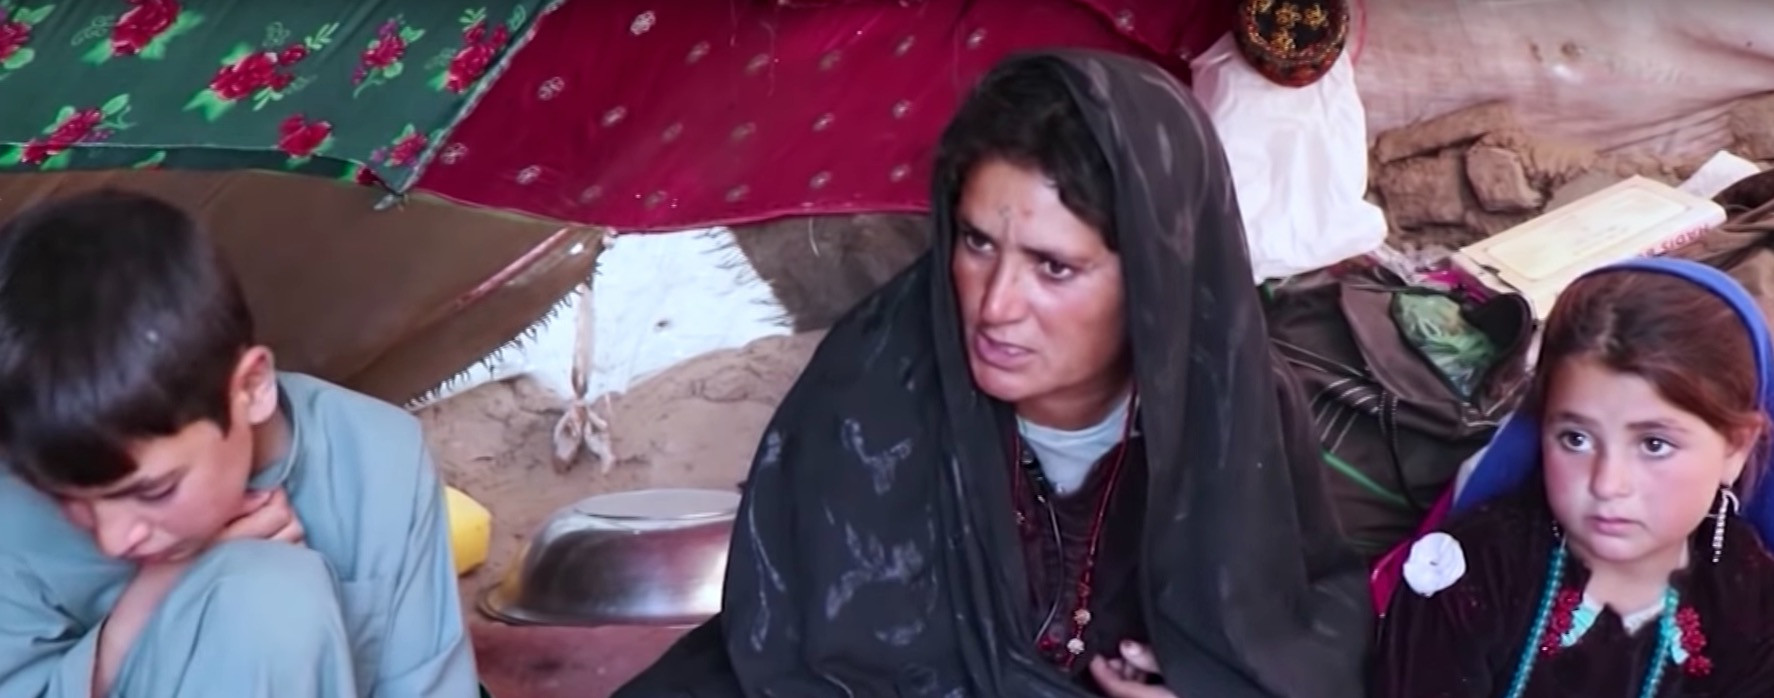 Στο Αφγανιστάν οι γονείς πουλάνε τα παιδιά τους για να τα σώσουν από την πείνα [Βίντεο]